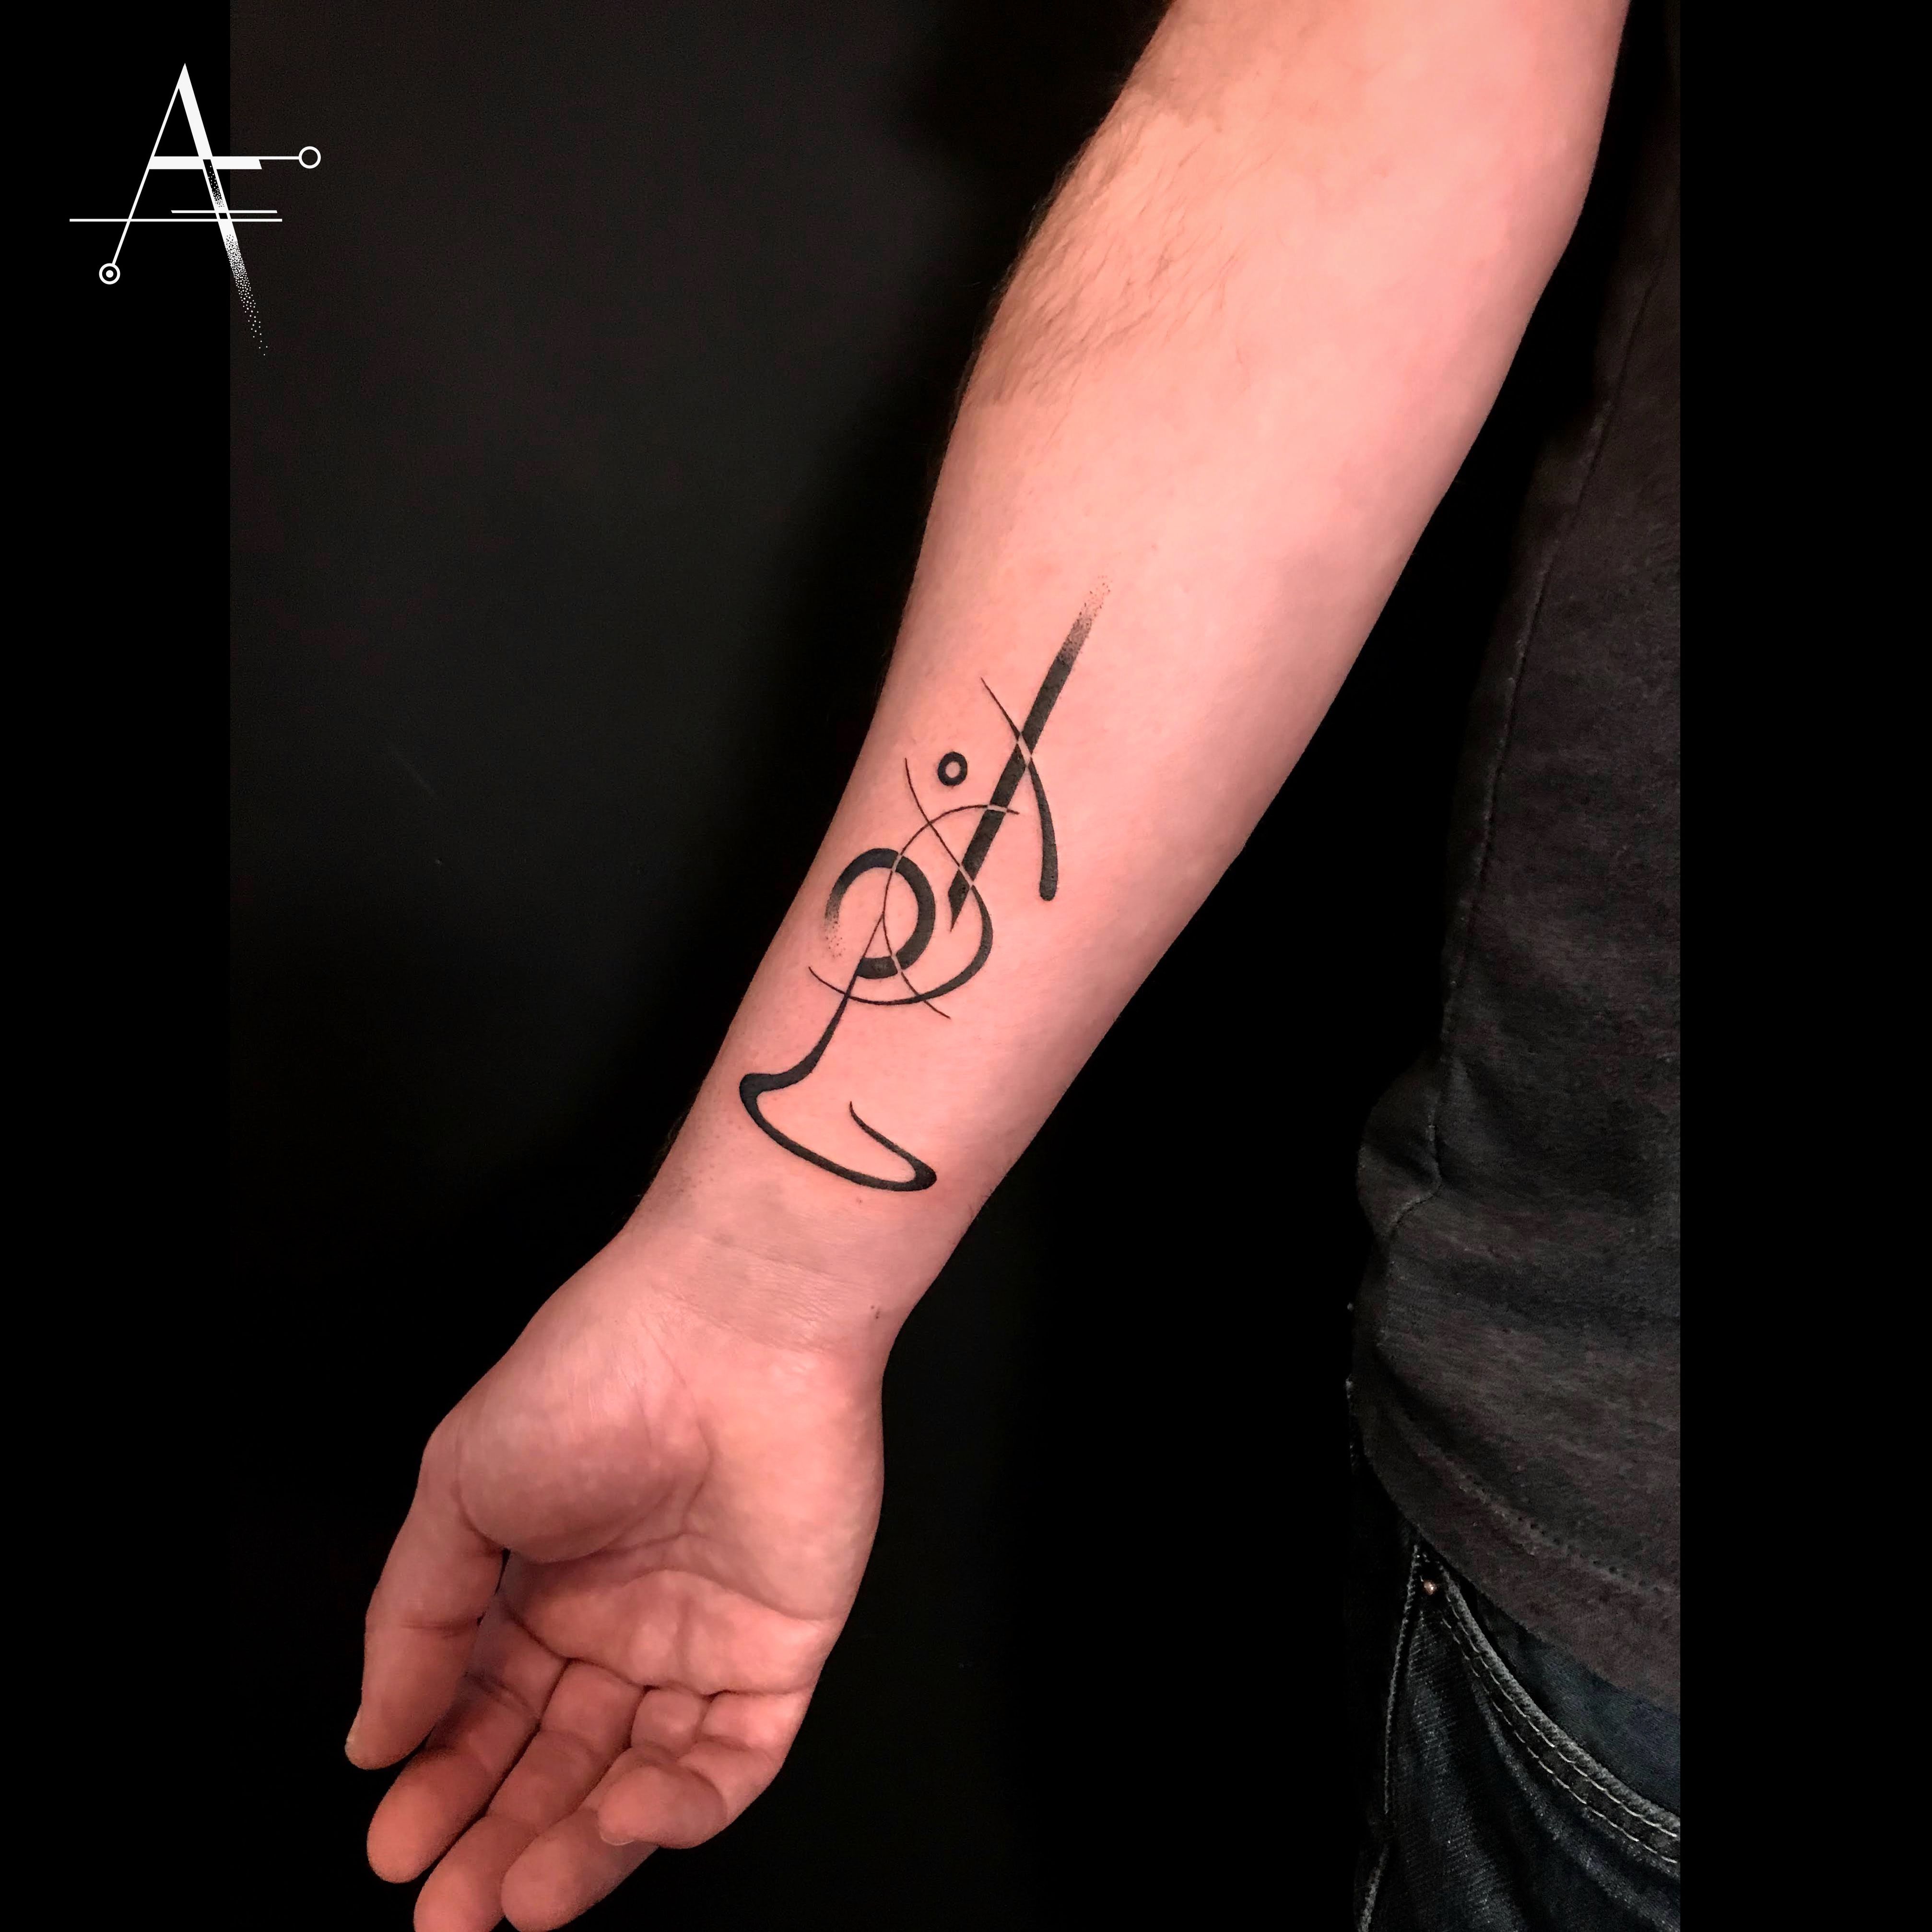 Trombone tattoo designs